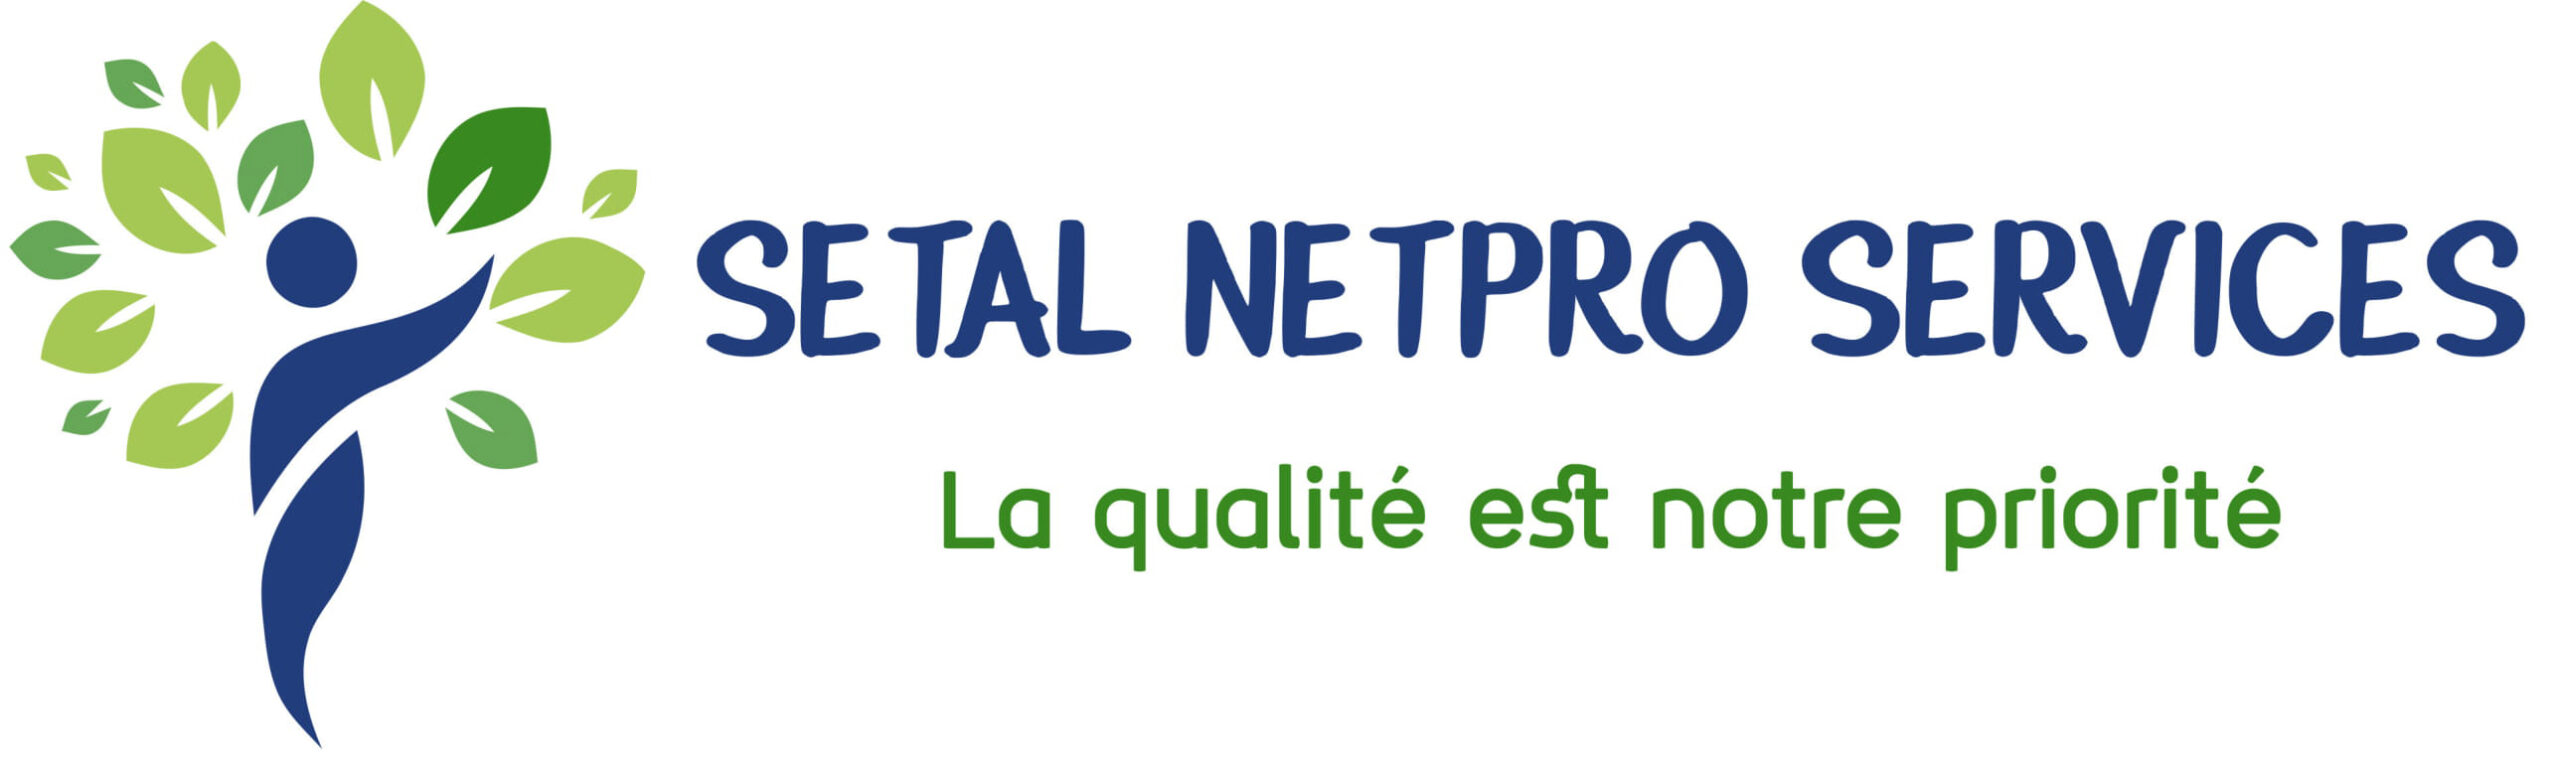 SETAL NETPRO SERVICES nettoyage professionnel à Paris